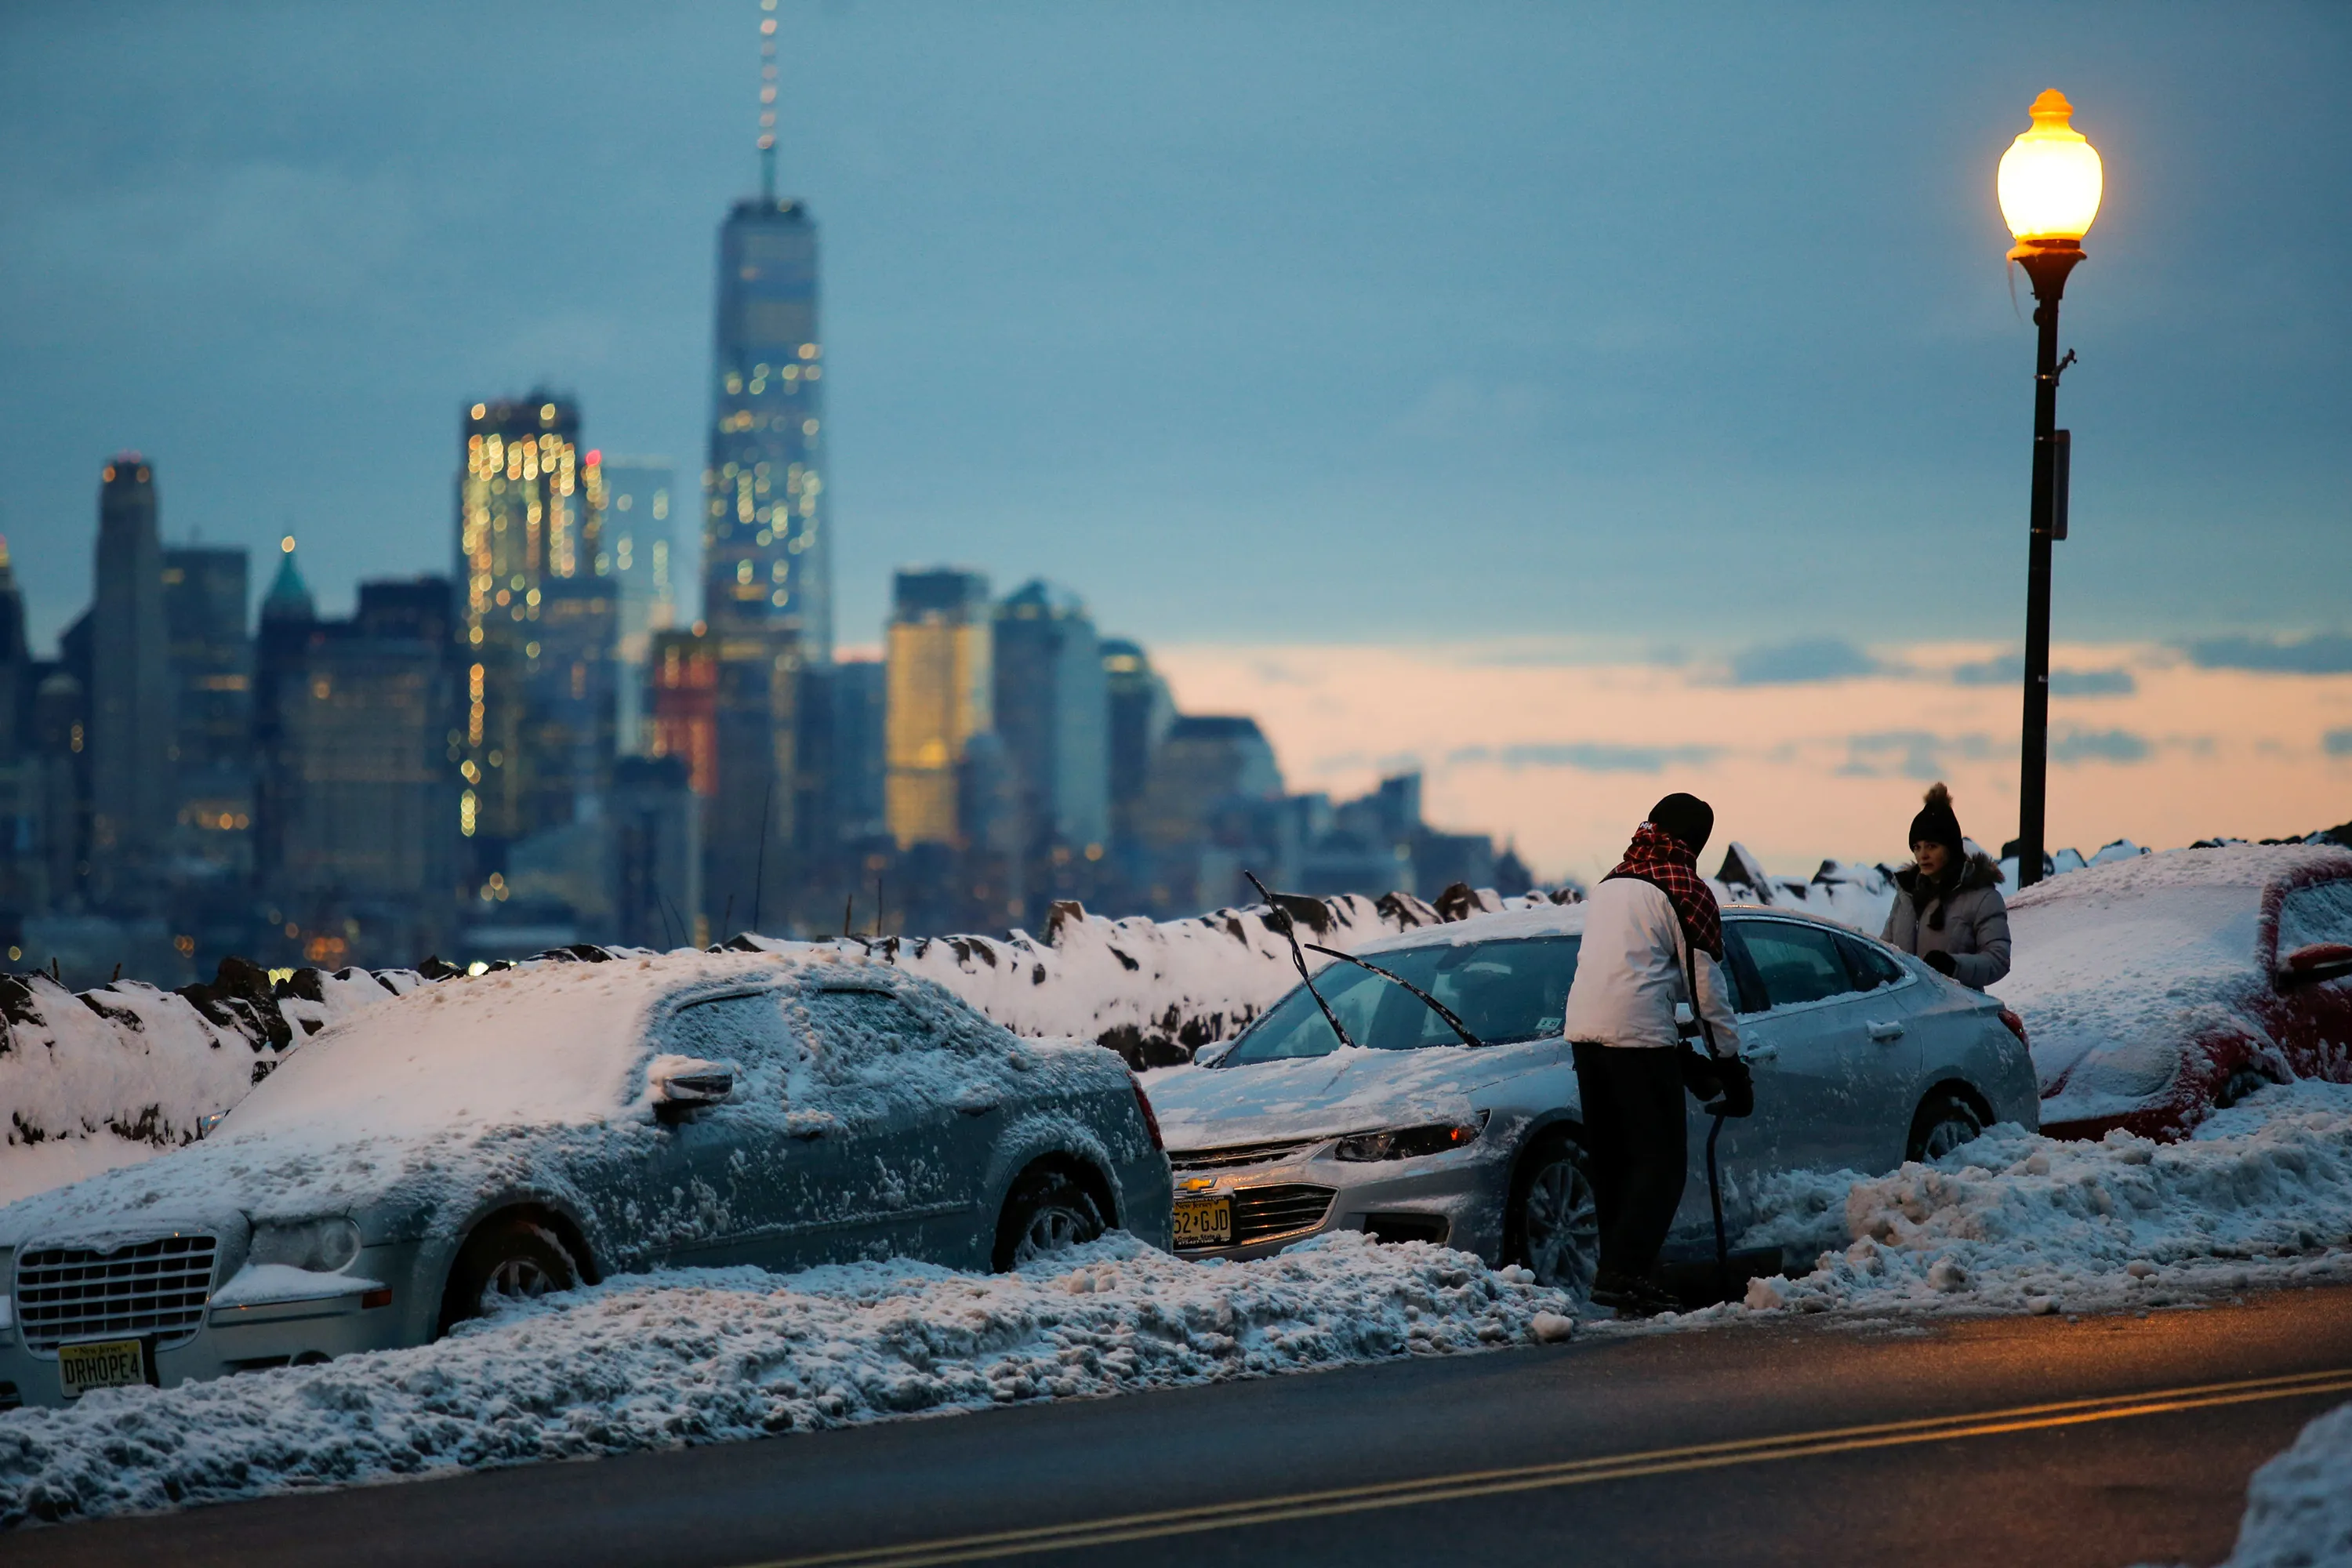 Америка зимнее время. Зима в Америке. Зимний Нью-Йорк. Снегопад в городе. Америка зимой.